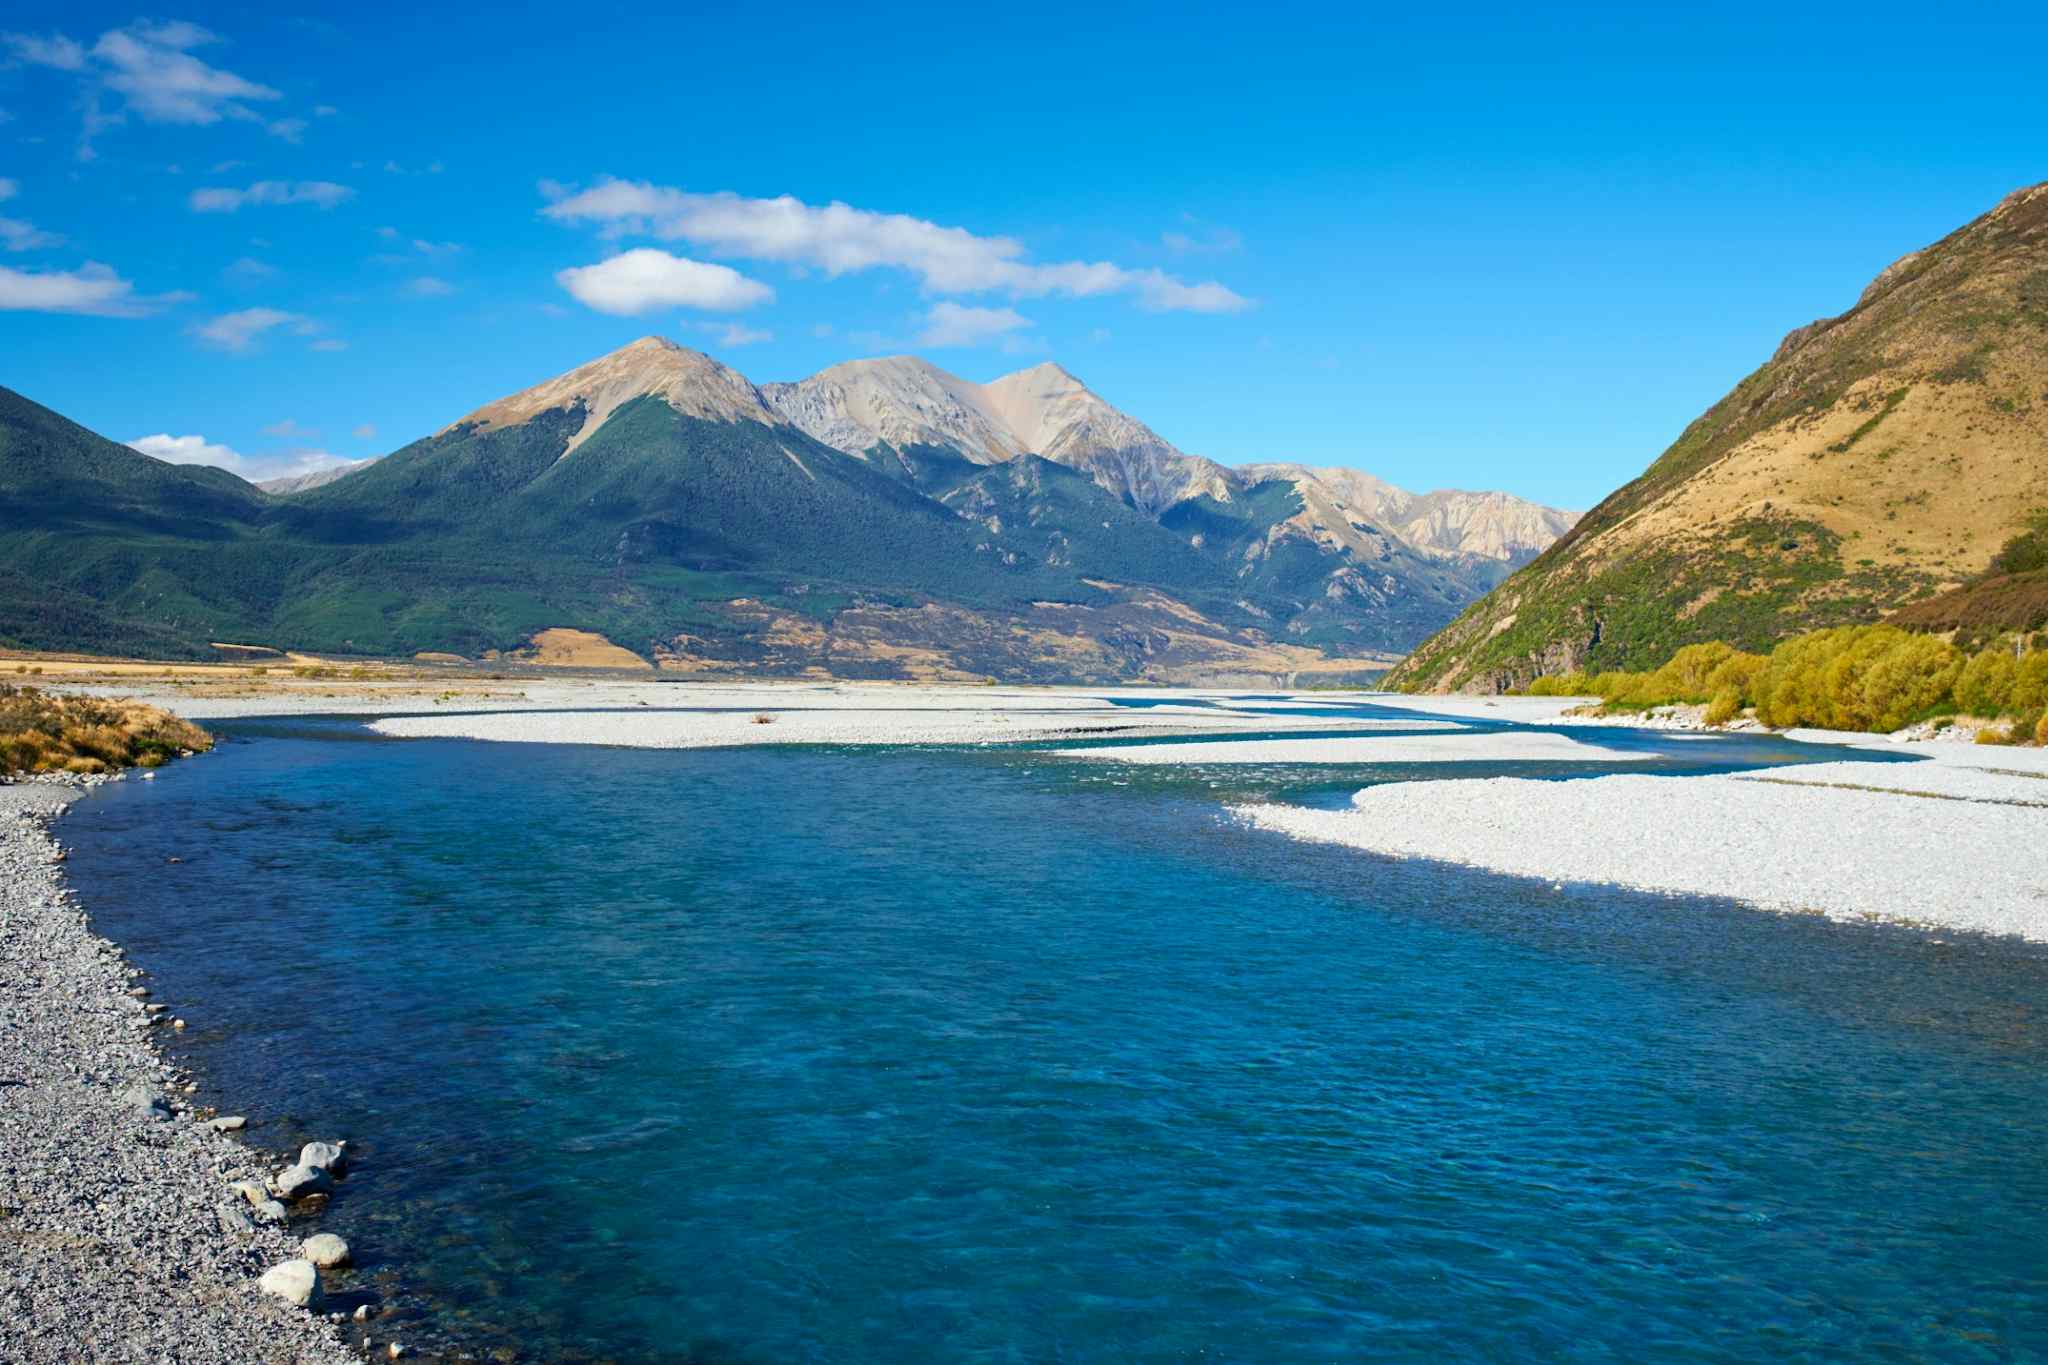 Waimakariri River, Arthur's Pass National Park, New Zealand.